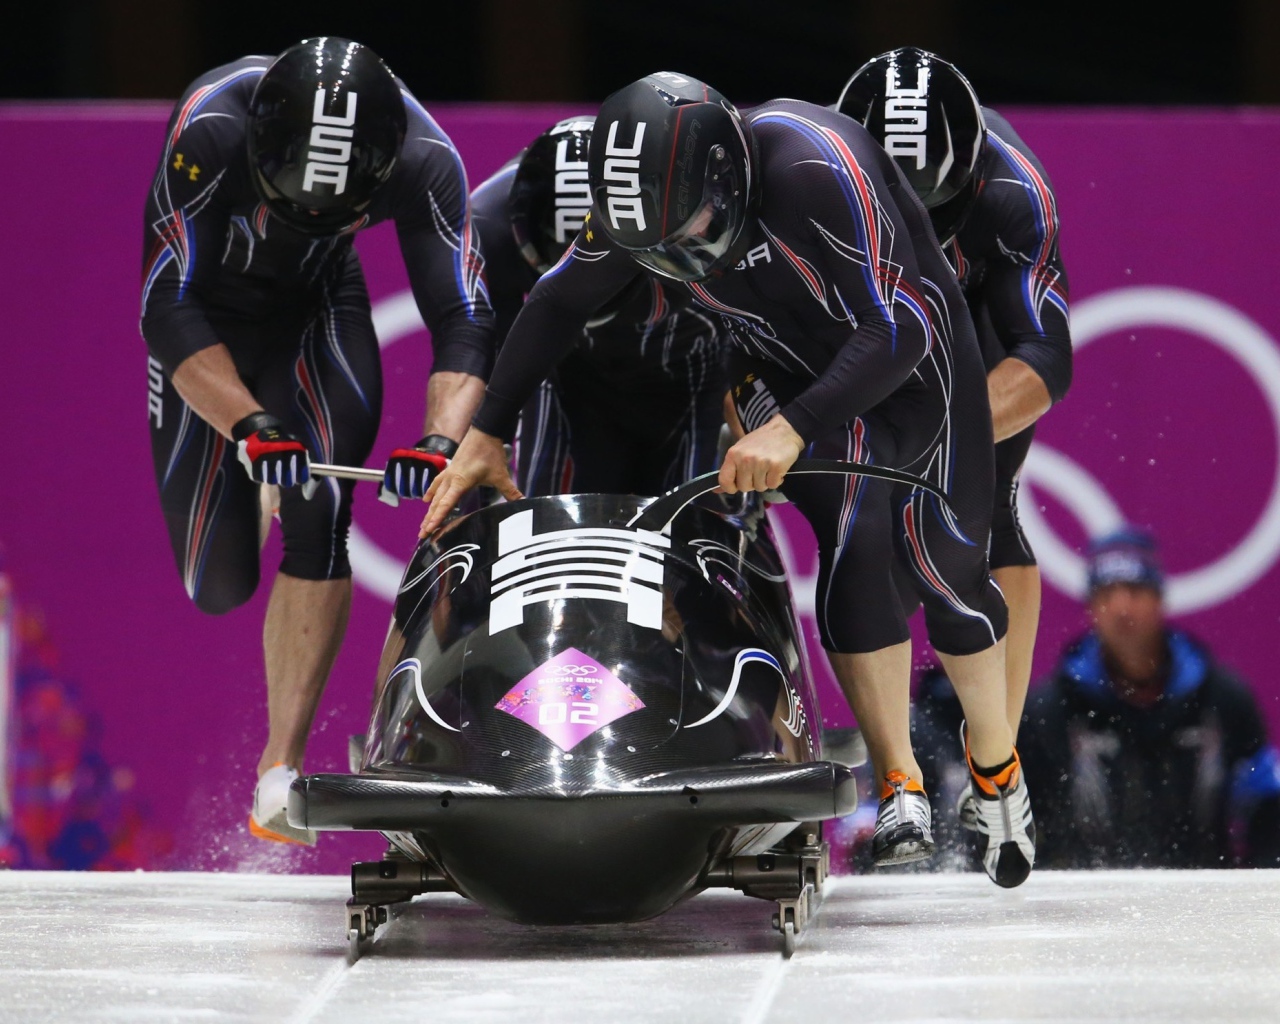 Обладатели бронзовой медали сборная США бобслеисты олимпиада  в Сочи